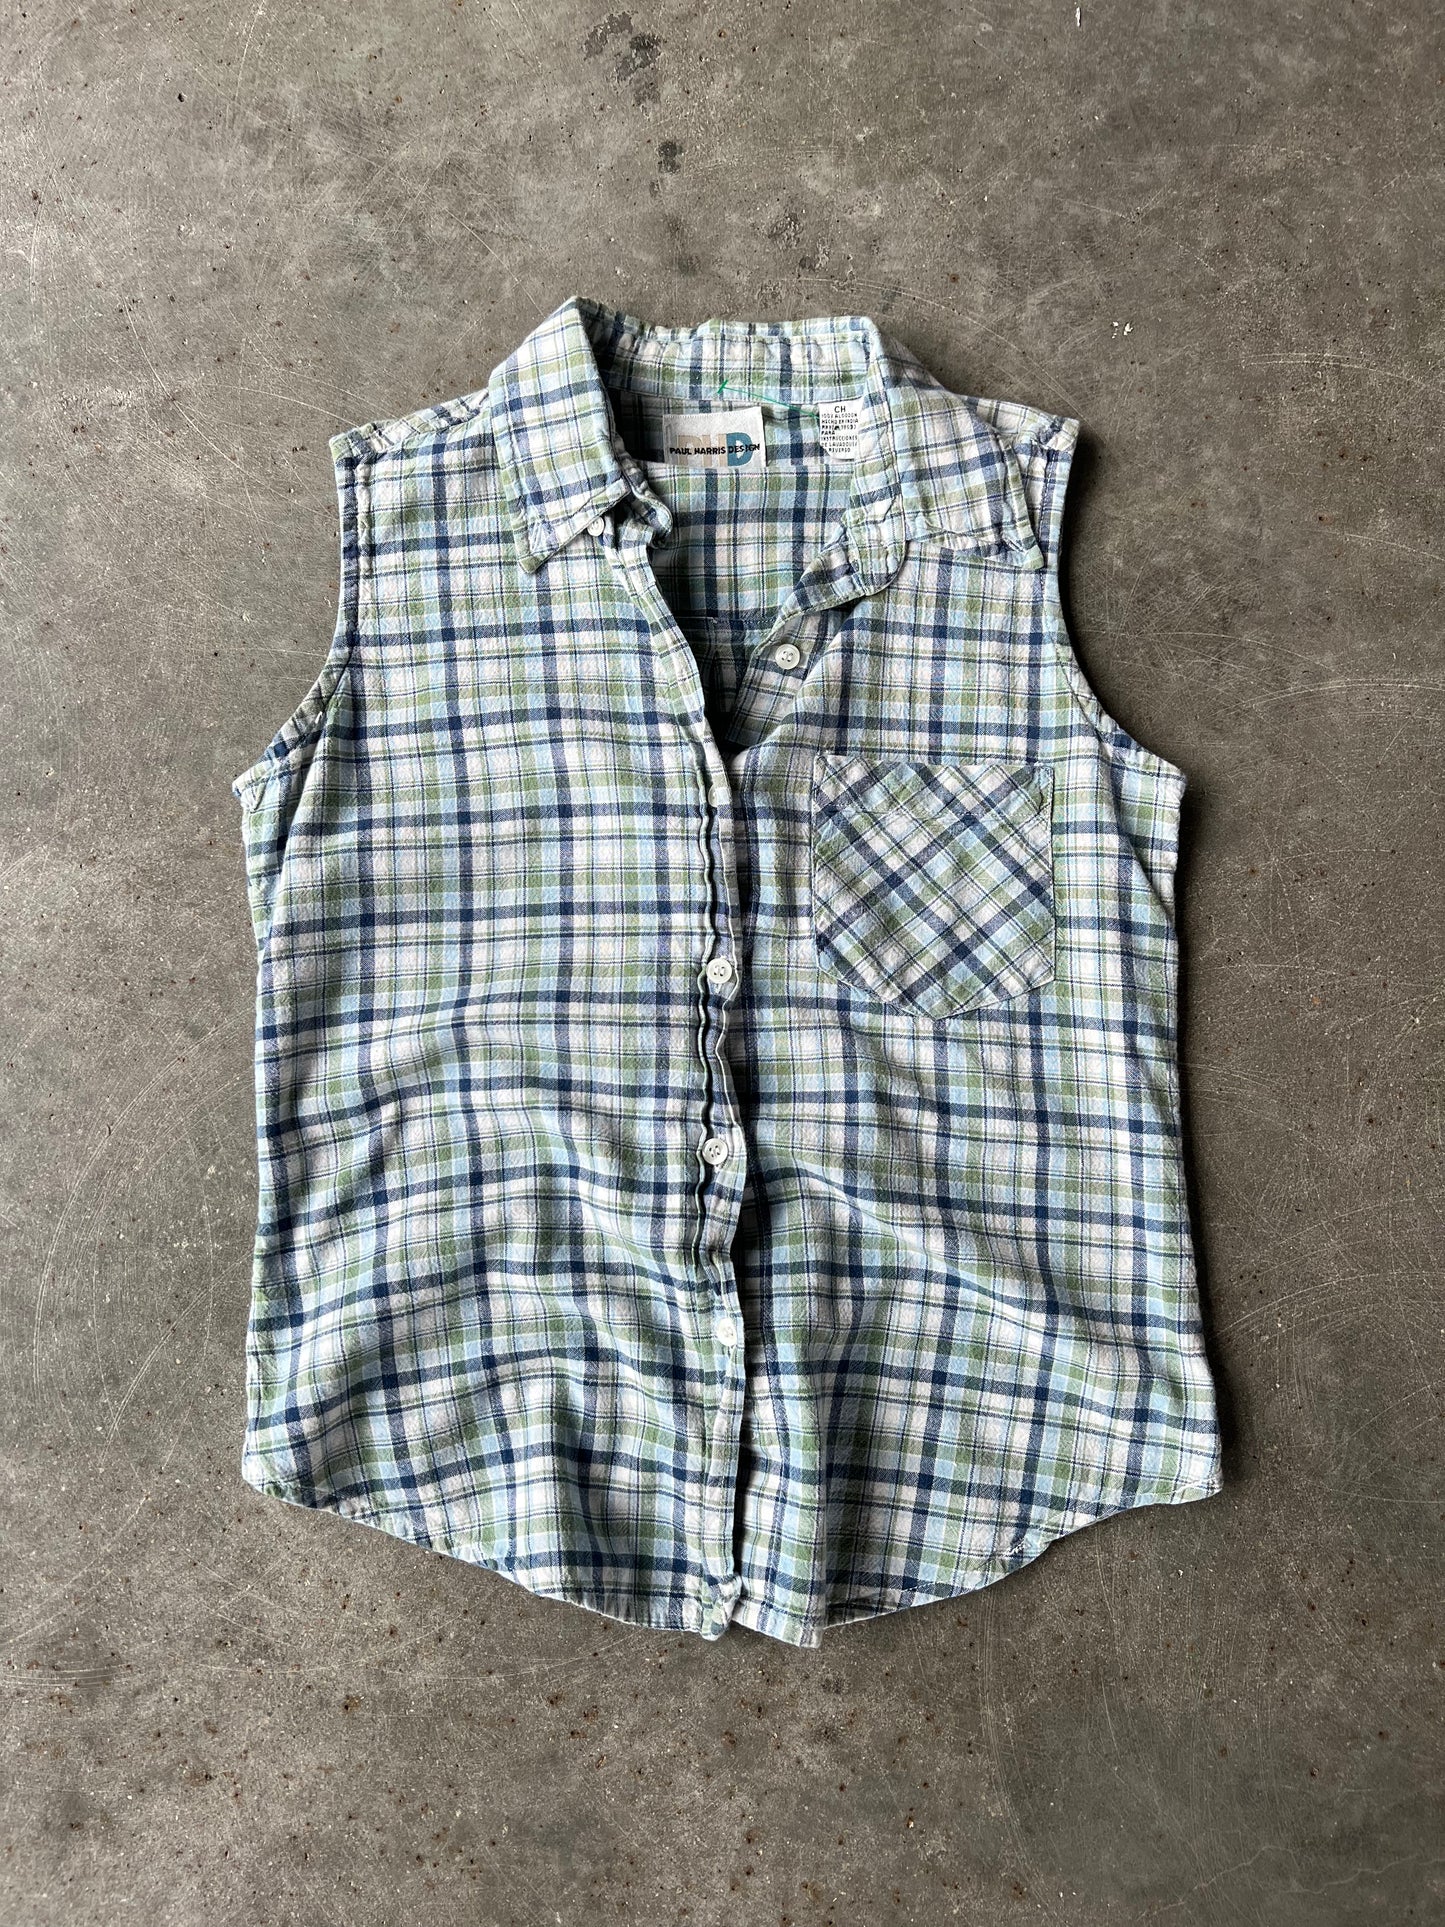 Vintage Plaid Button-Up Vest - S